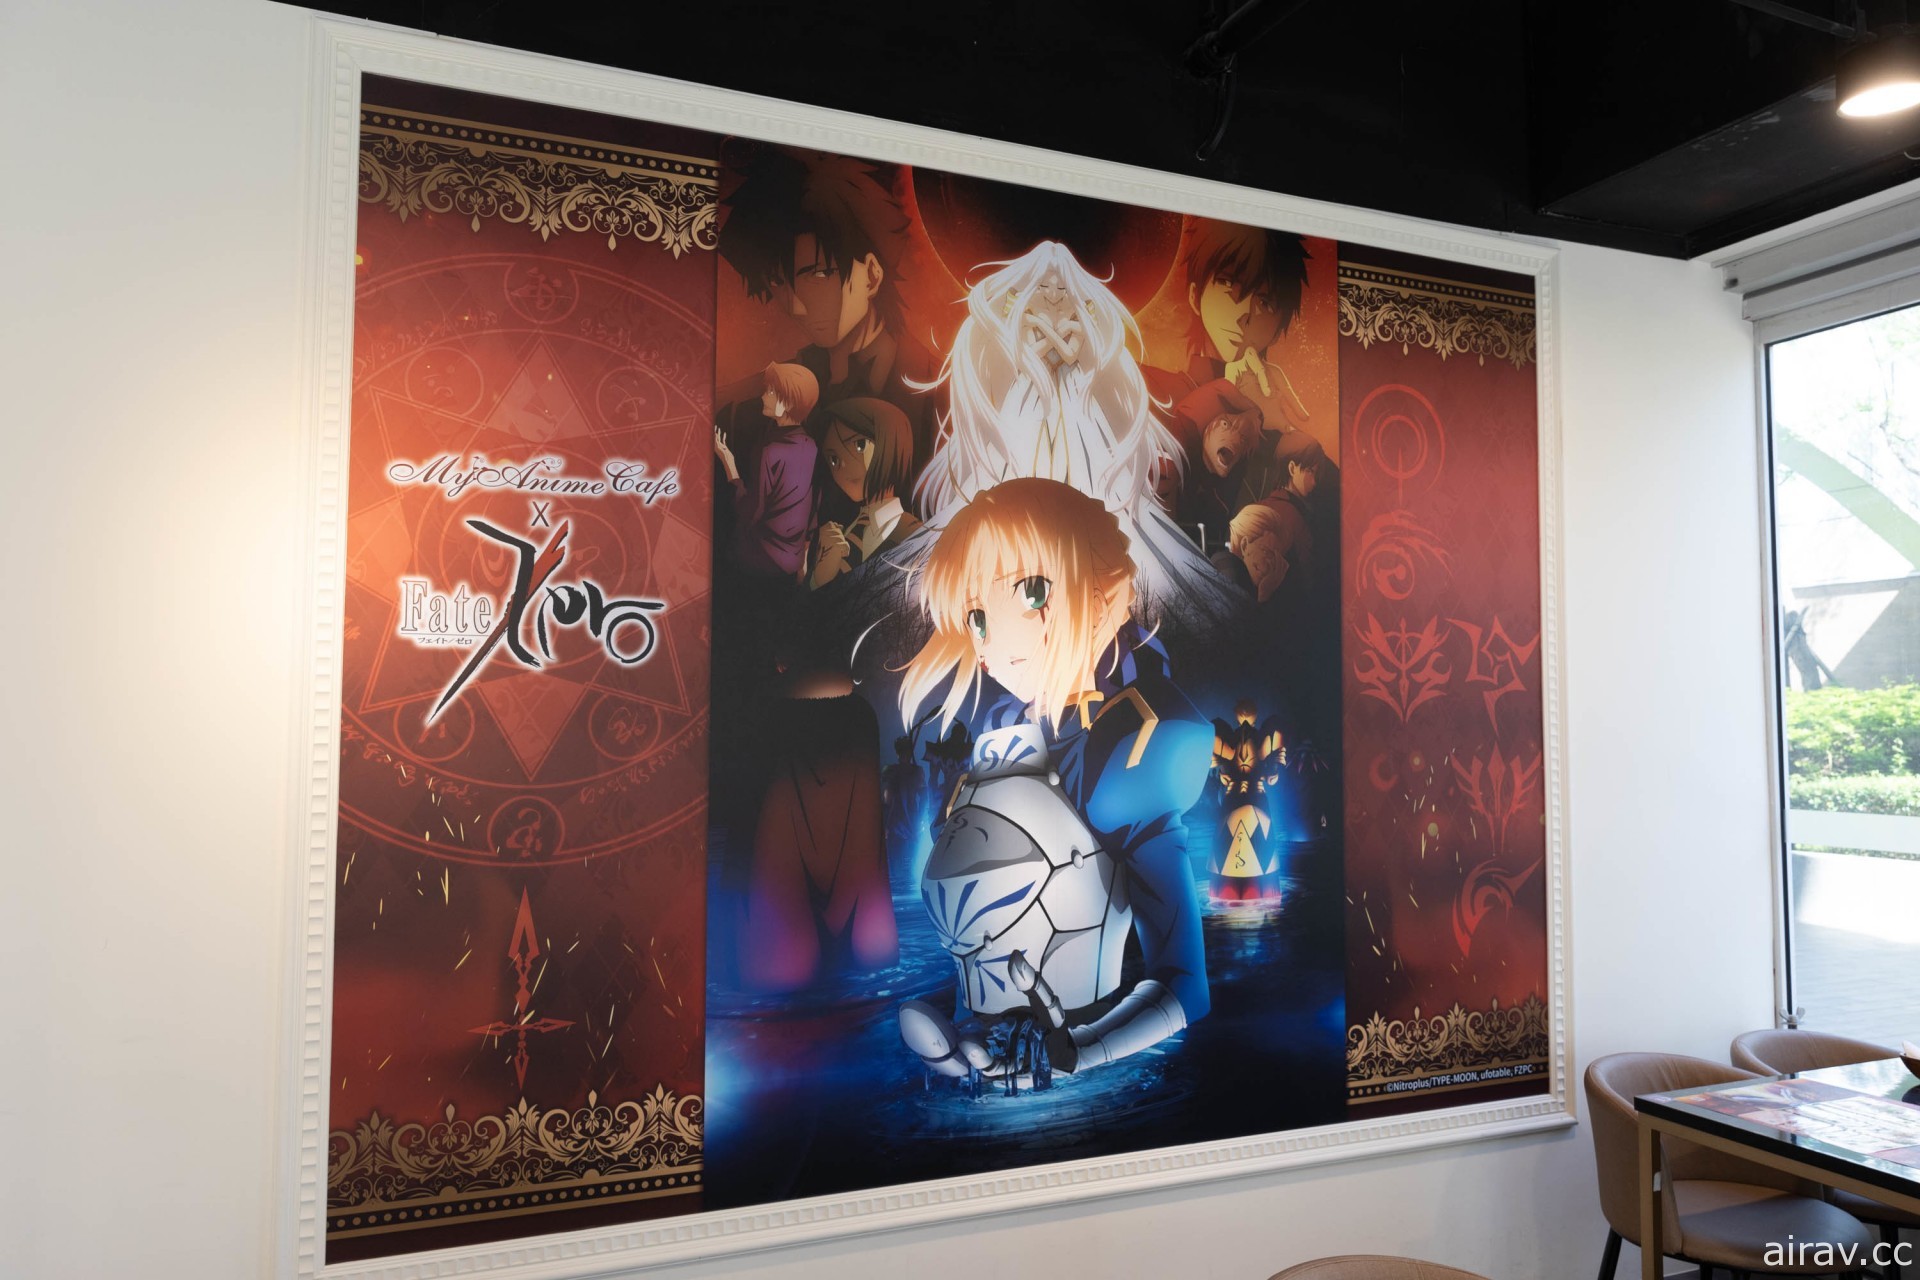 《Fate/Zero》動畫 10 周年主題 Café 即日起開幕 現場布置及餐點亮相